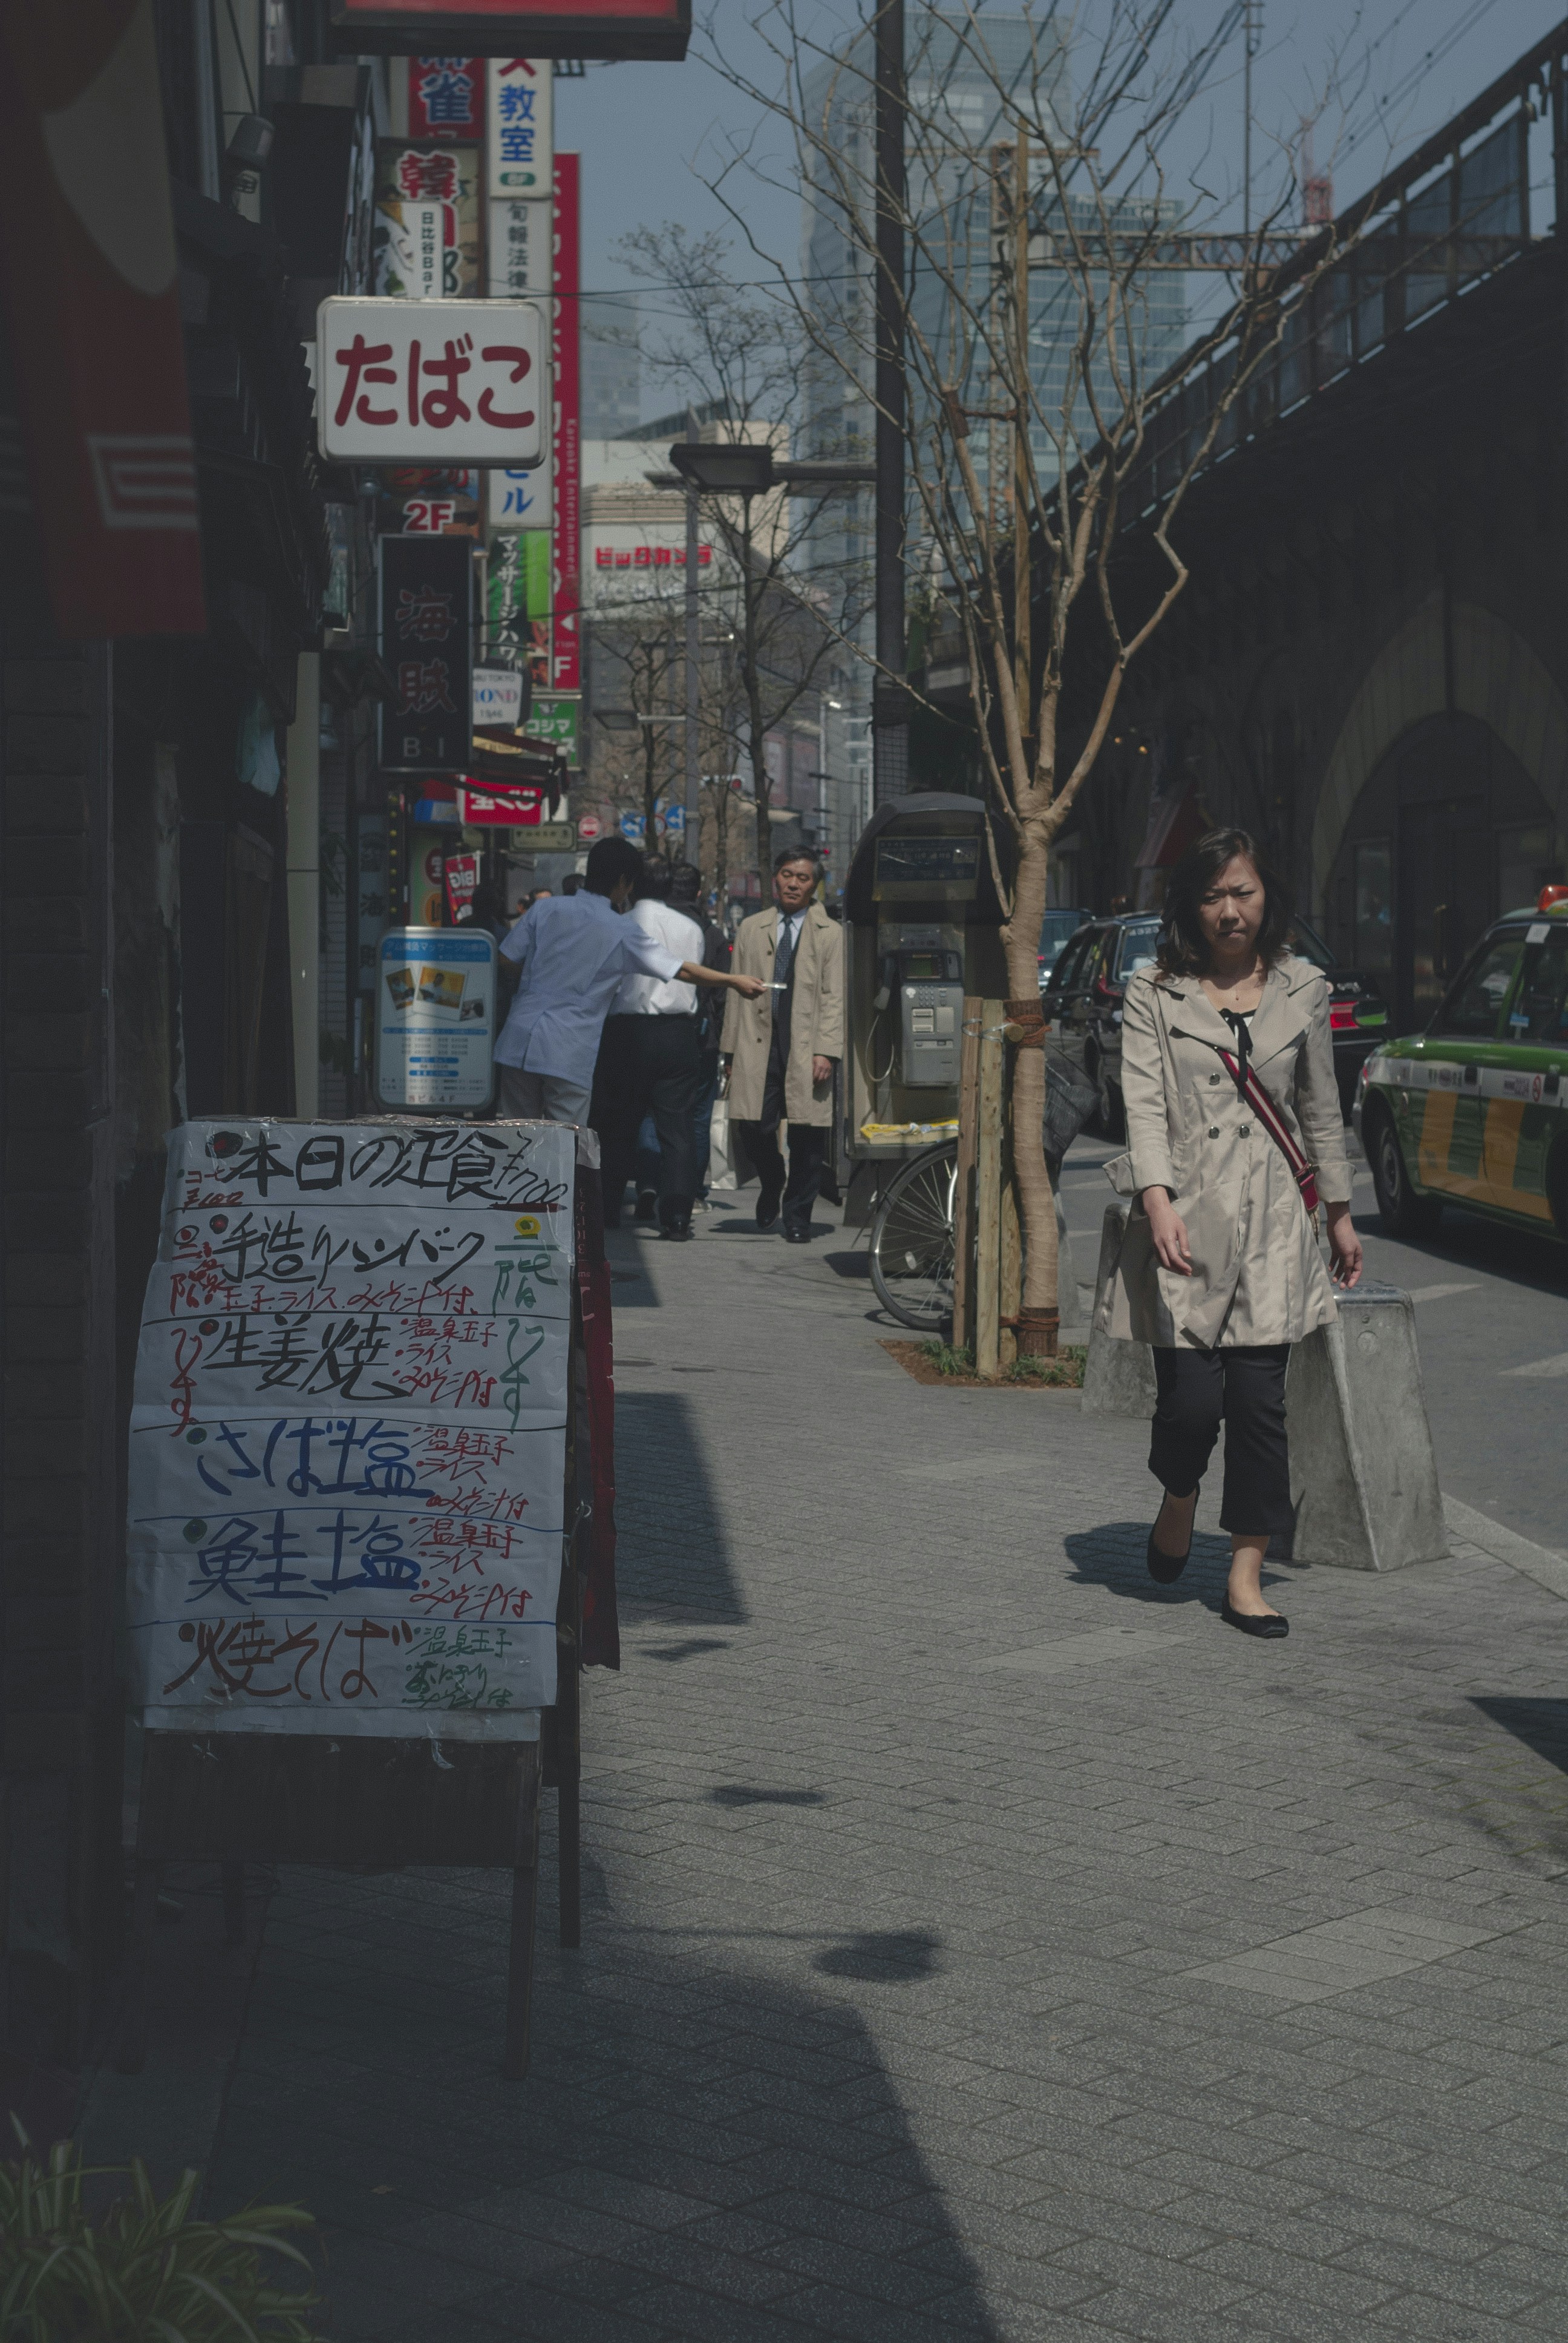 Little Street in Tokyo